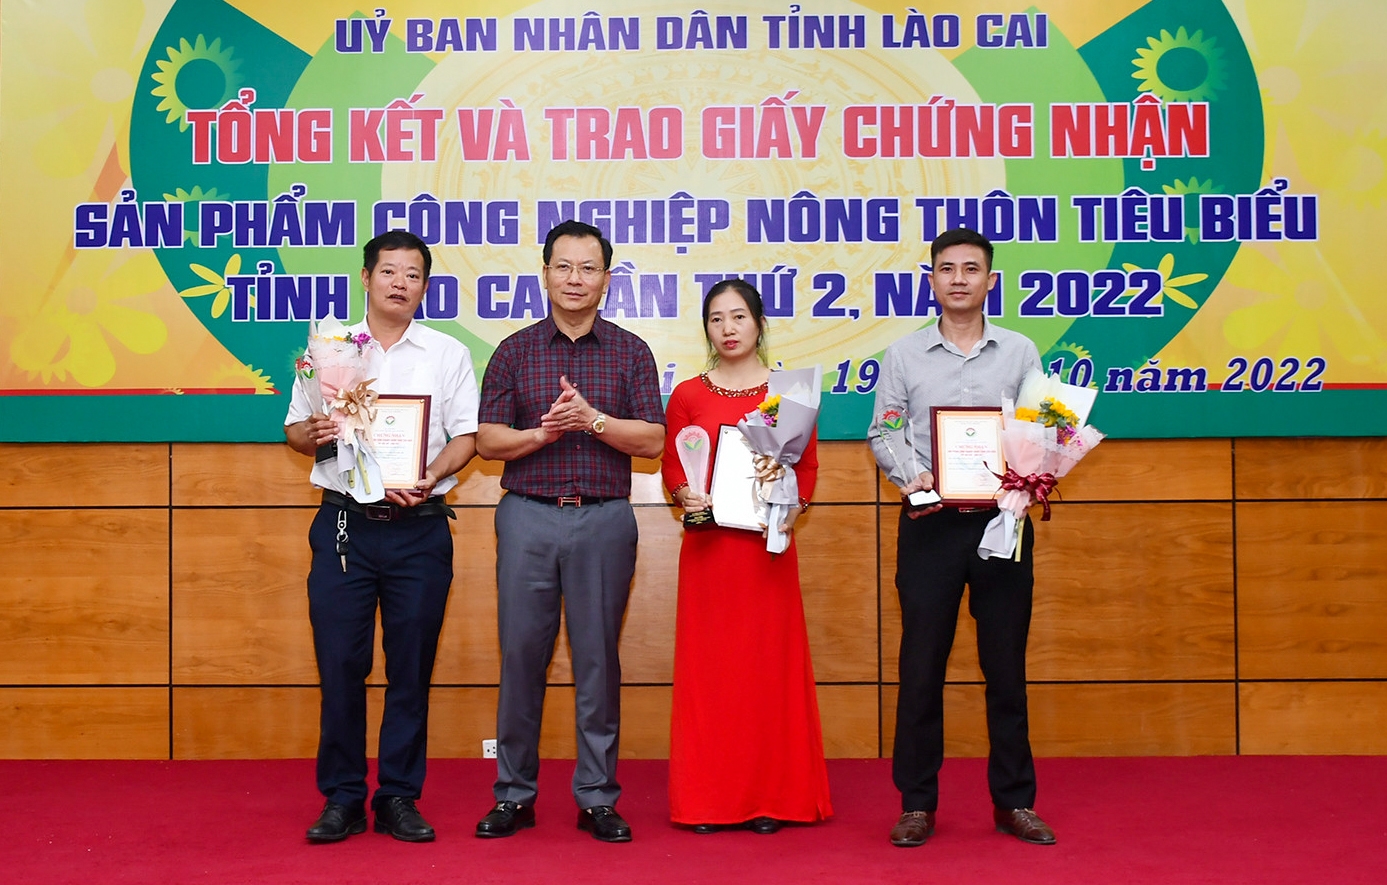 Phó Chủ tịch Thường trực UBND tỉnh Lào Cai Hoàng Quốc Khánh trao chứng nhận và cúp tôn vinh 3 sản phẩm công nghiệp nông thôn tiêu biểu khu vực miền Bắc năm 2022 của Lào Cai.